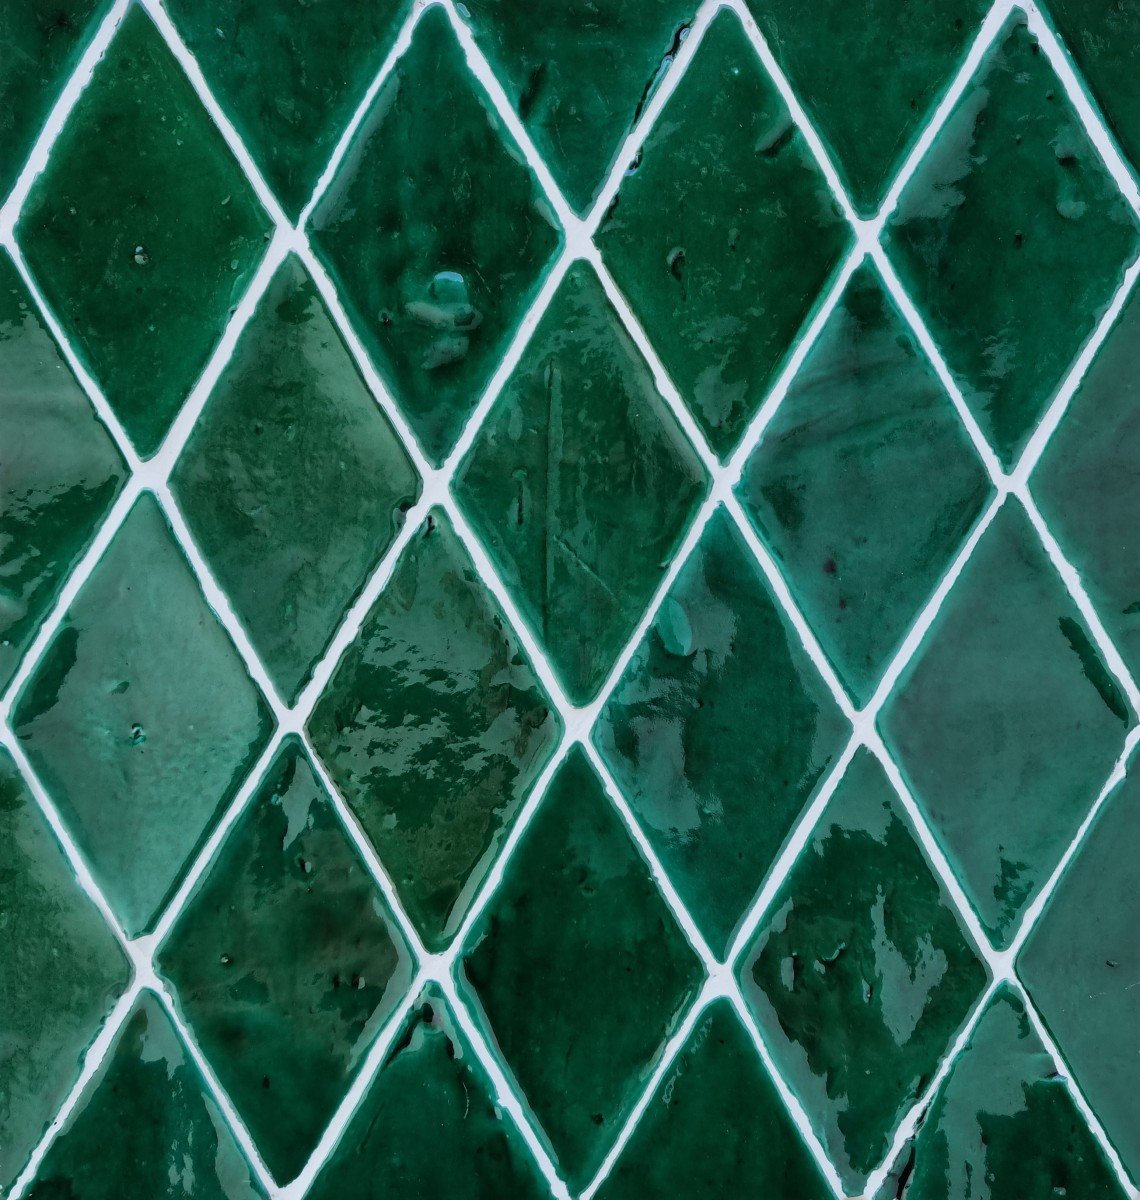 Glasierte Terracotta Wandfliesen - Farbe Grün, Referenz G305 - Format 8,5x14 cm, diamond